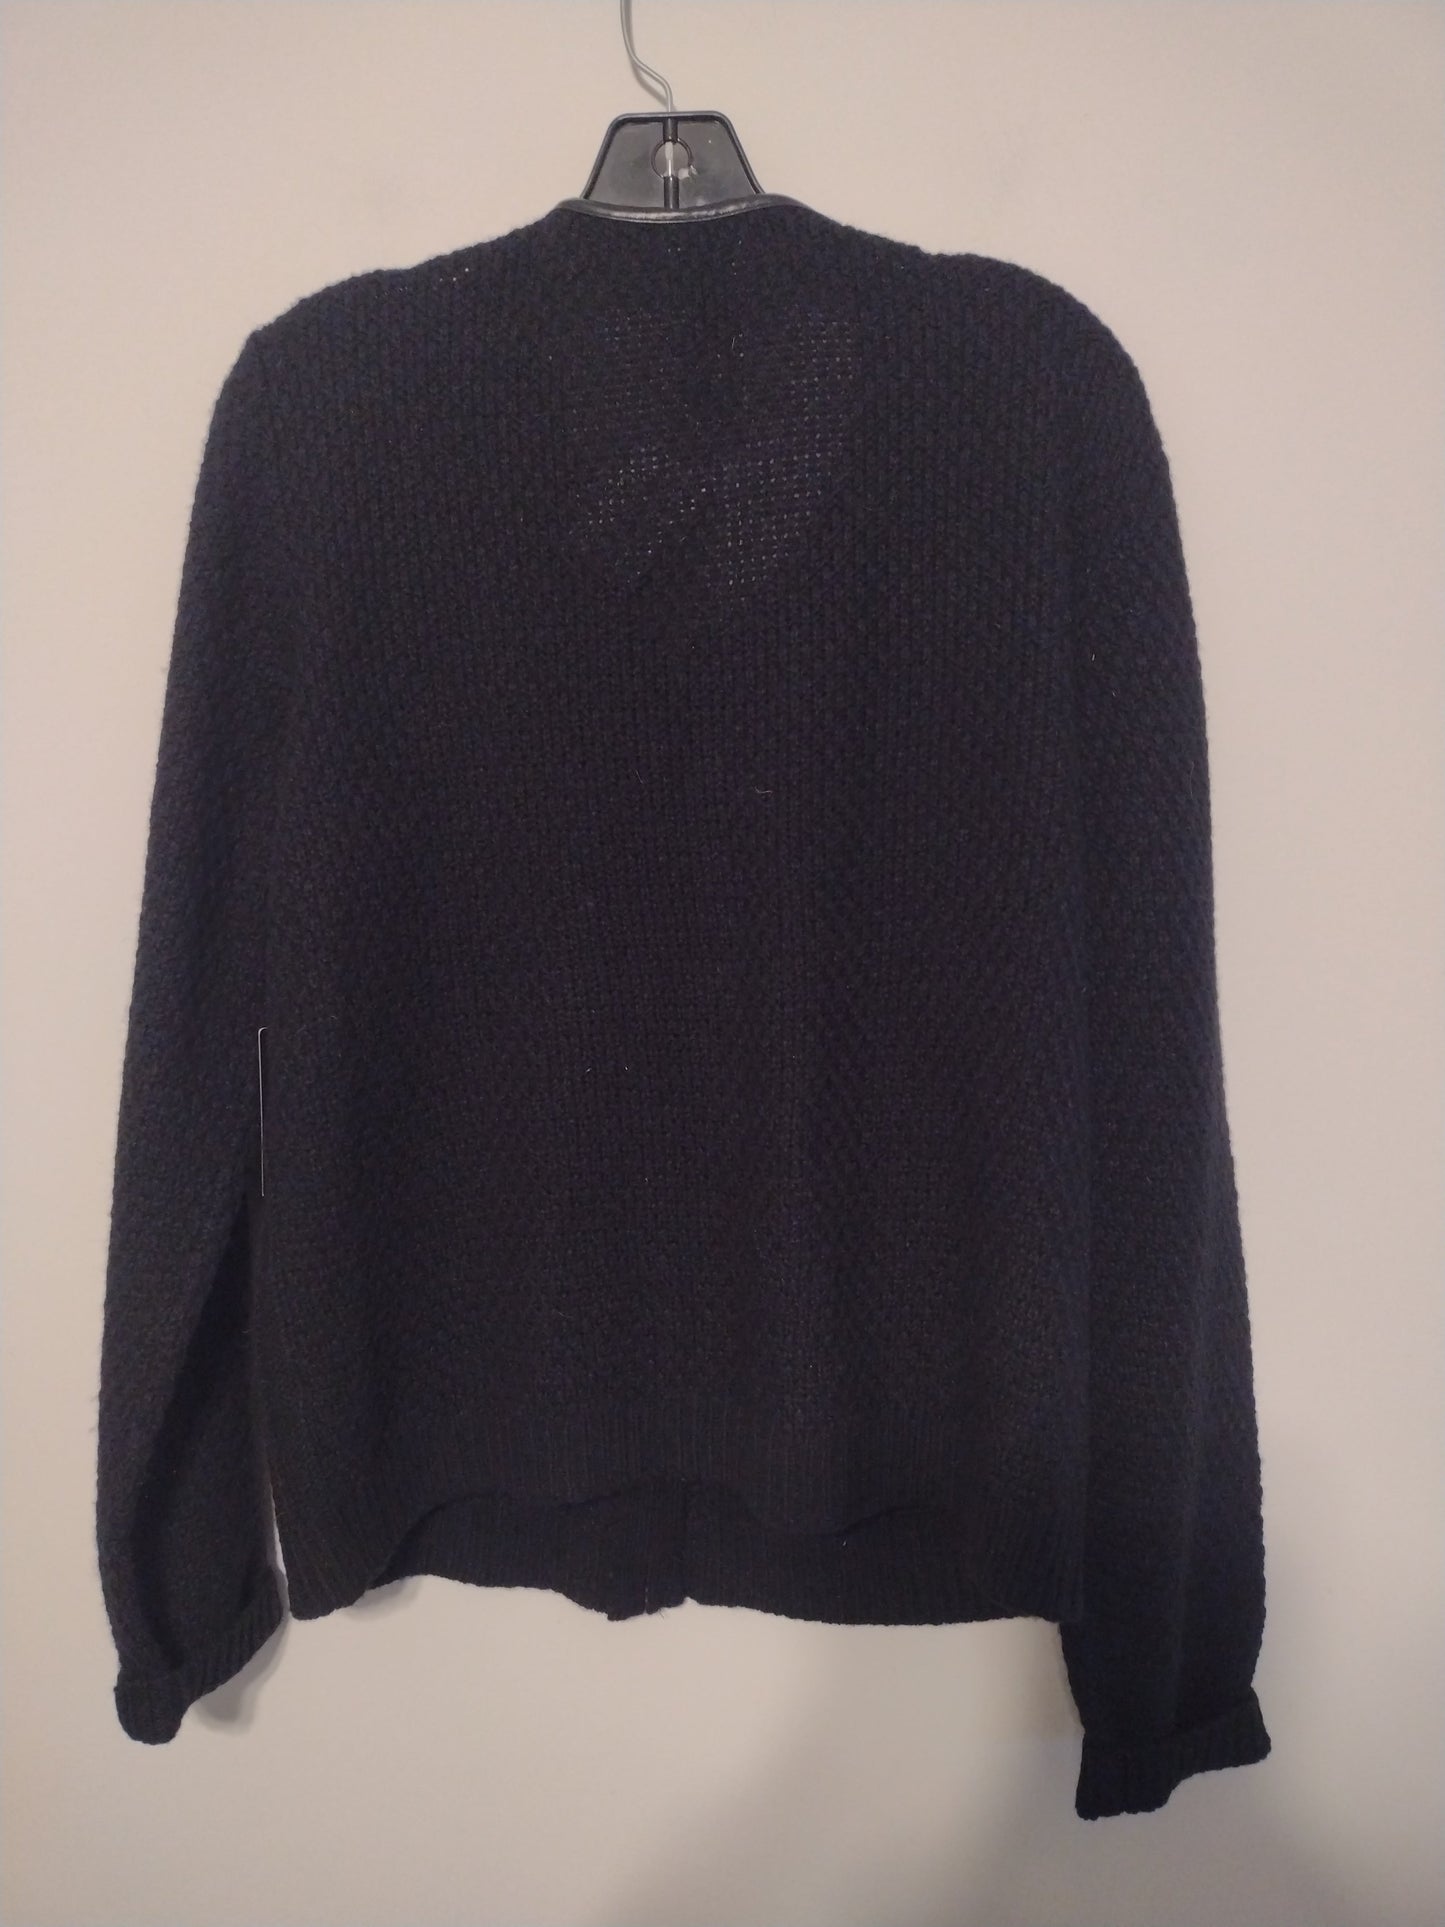 Sweater Cardigan By Cynthia Rowley  Size: Xl